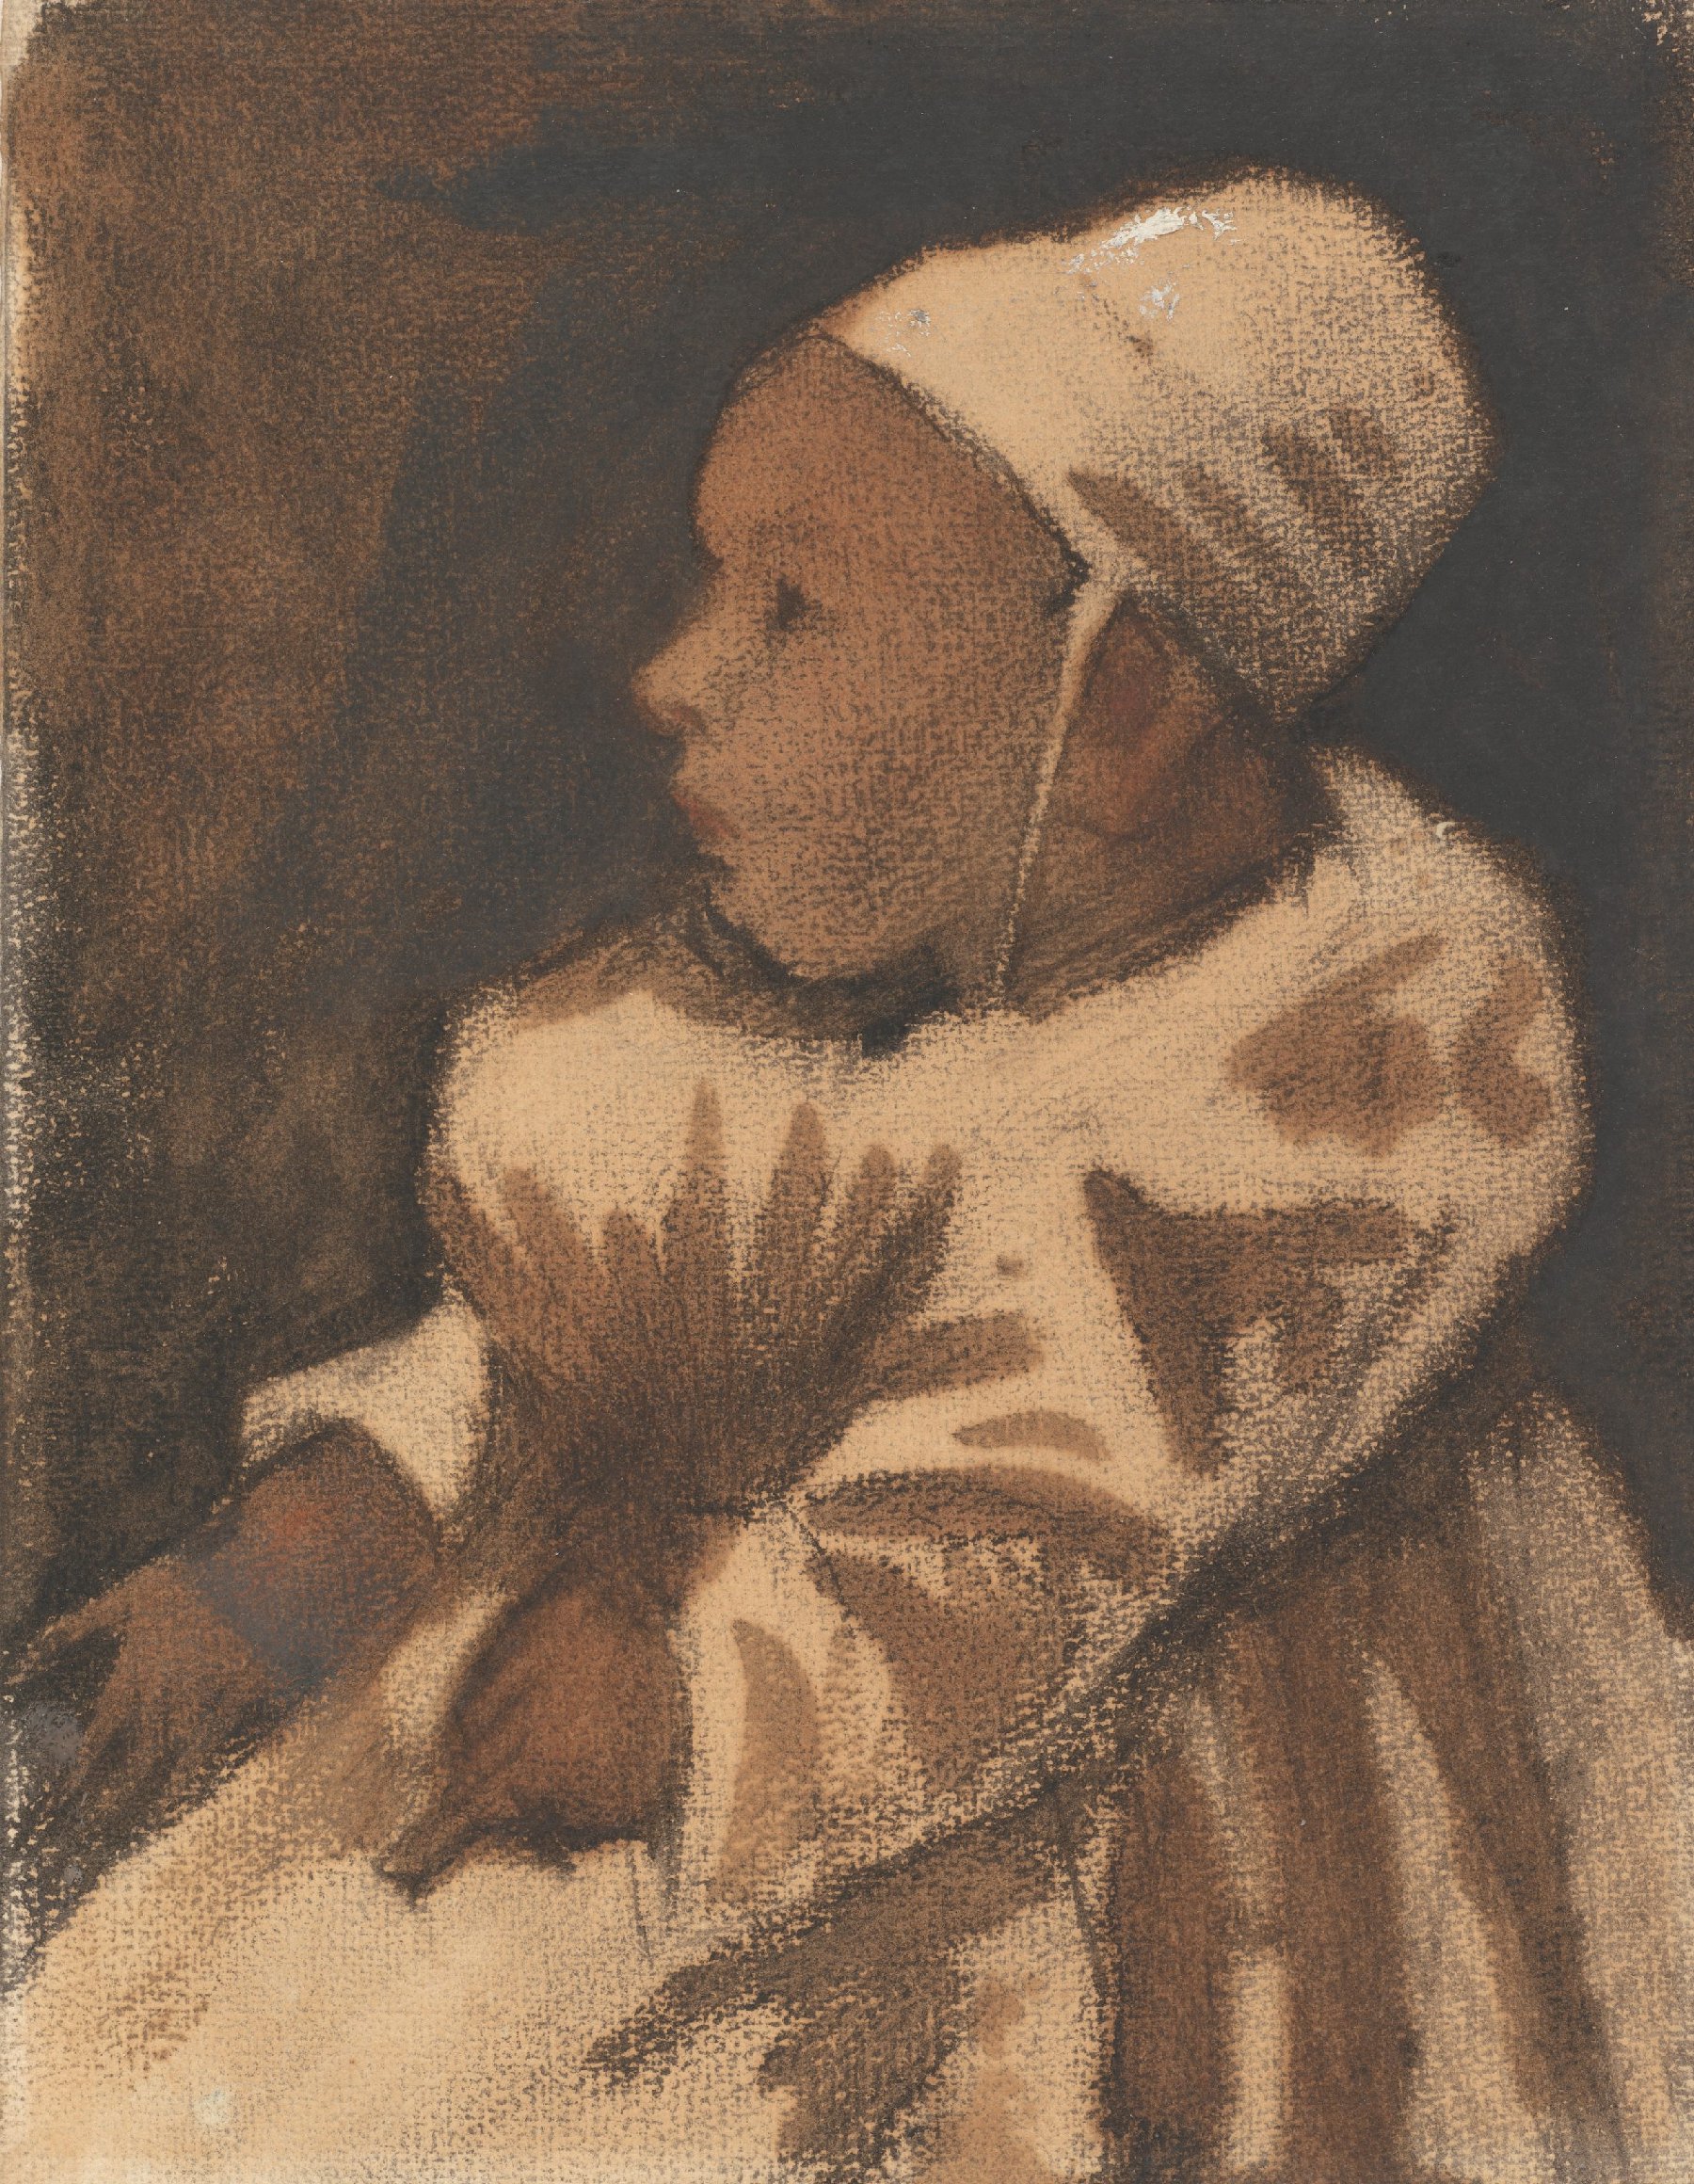 Baby Vincent van Gogh (1853 - 1890), Den Haag, winter 1882-1883